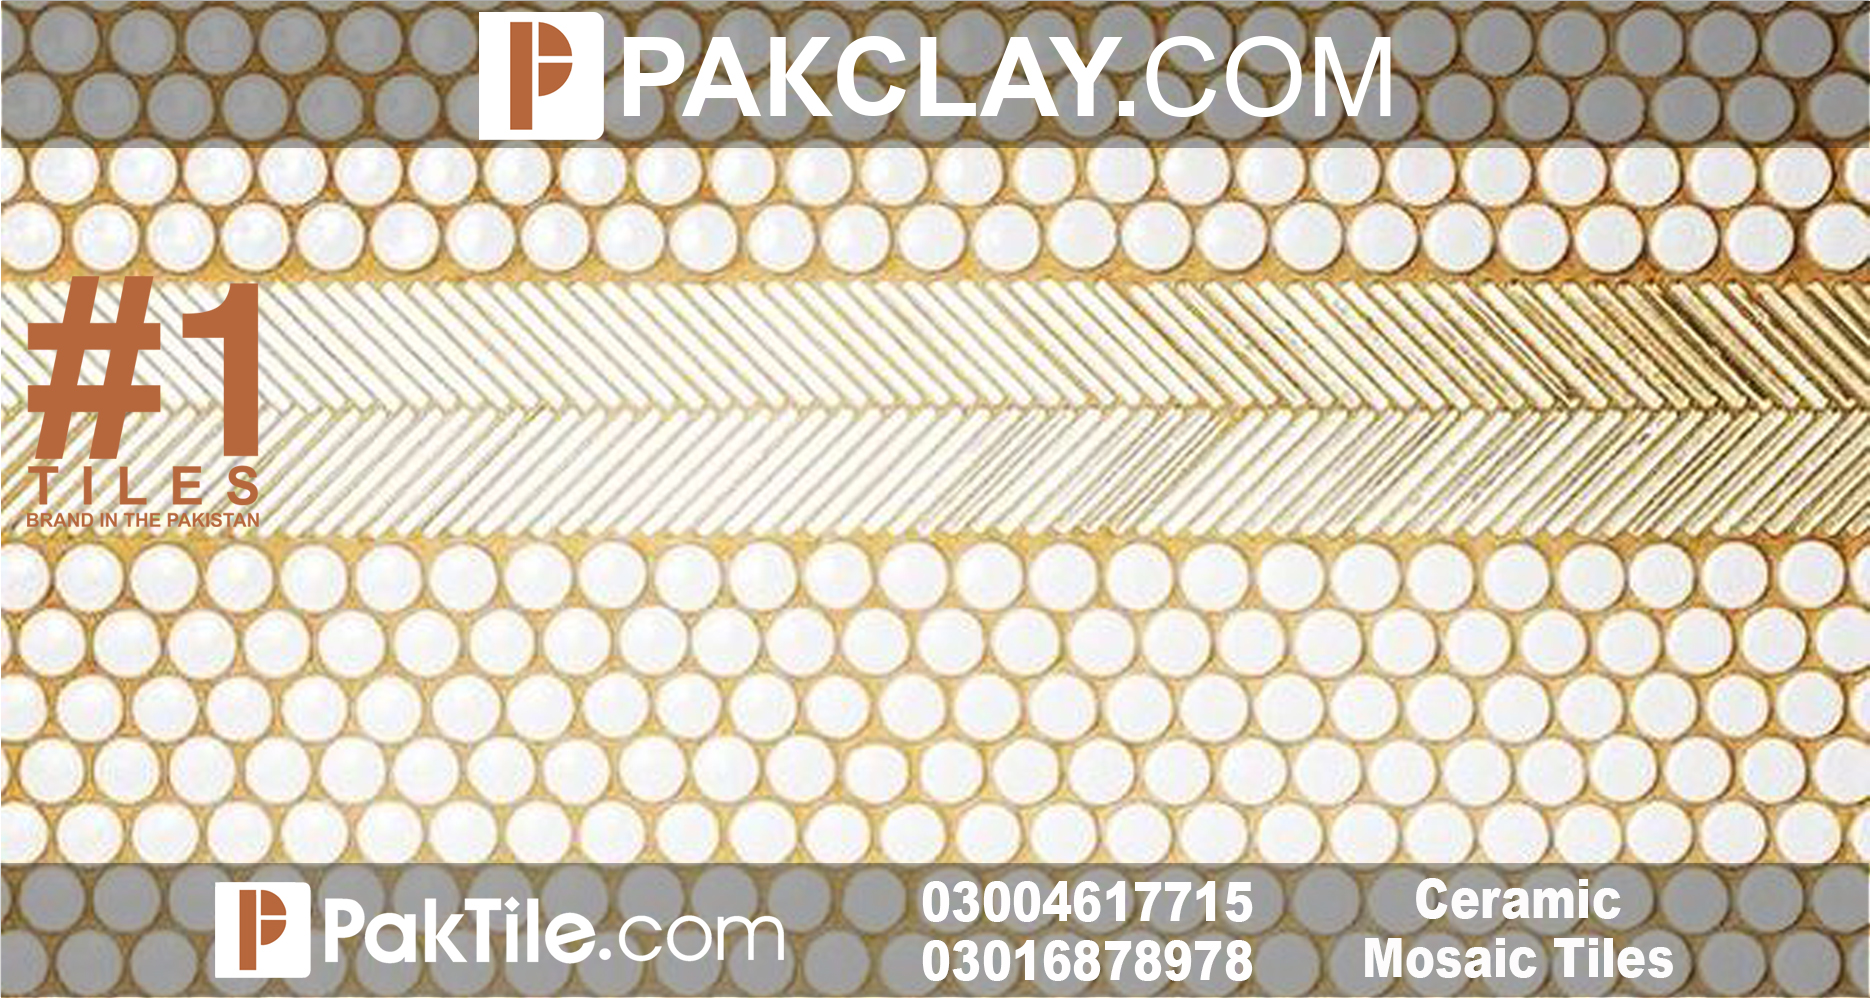 Ceramic Mosaic Tiles Design in Pakistan